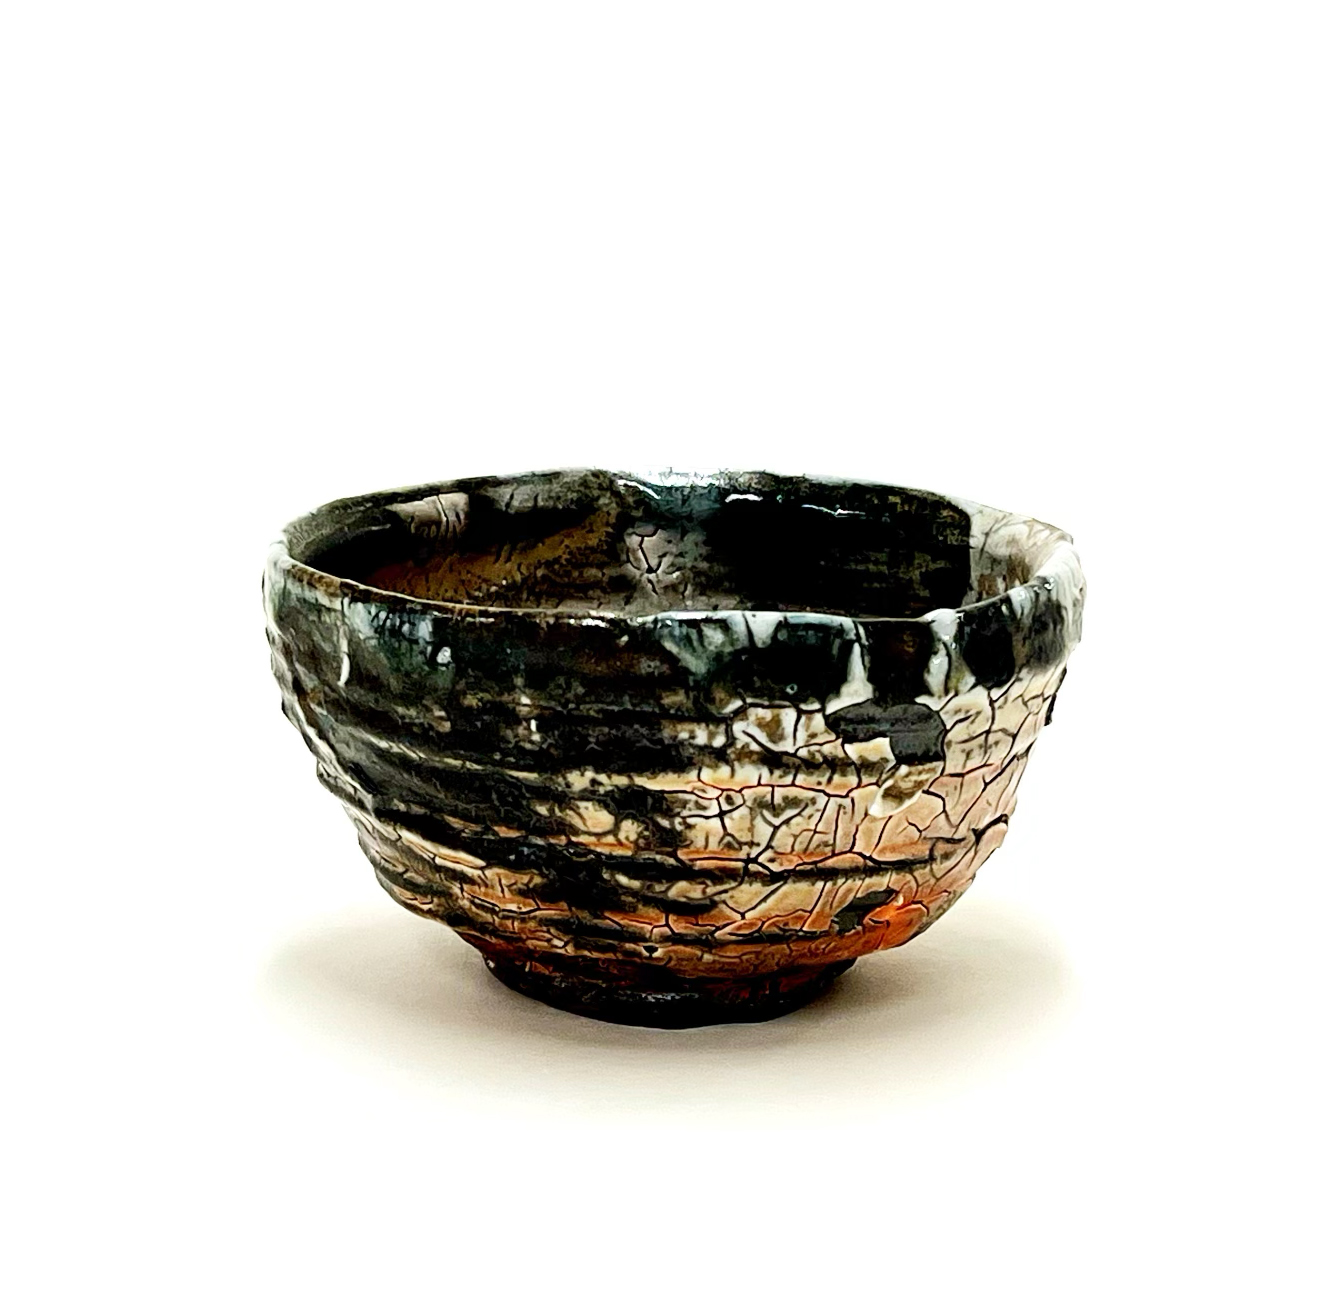 #MA22-21 "Vessel" by Michael Ashley (c) - ceramic